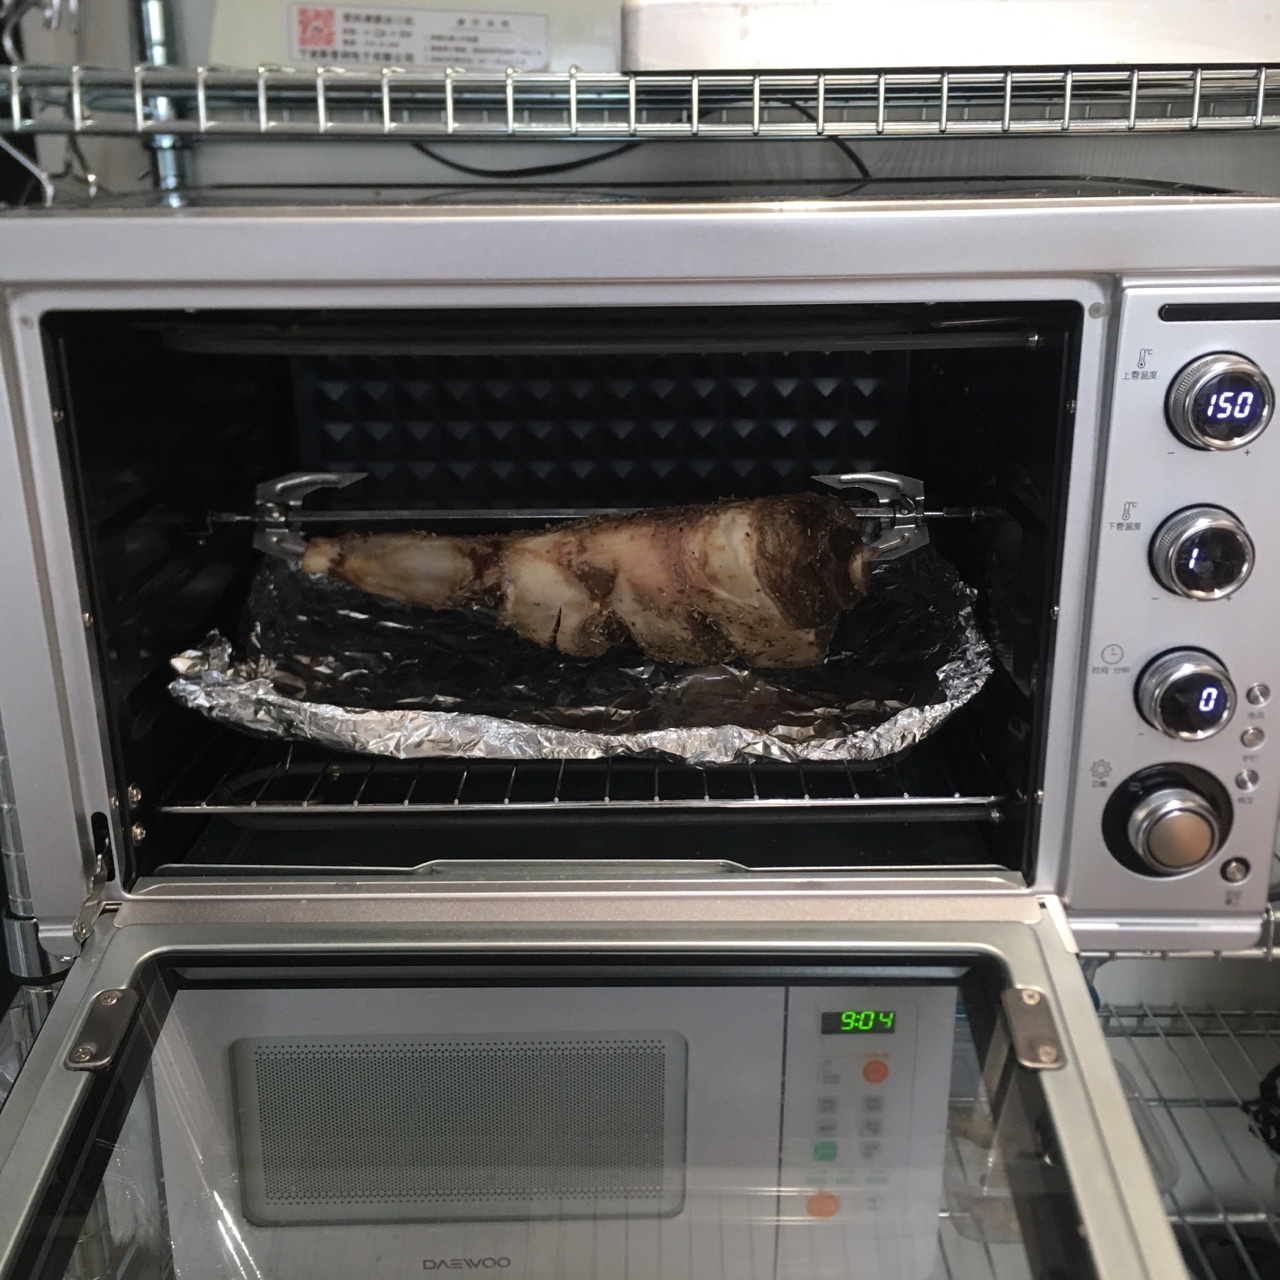 羊腿一般烤箱烤多久